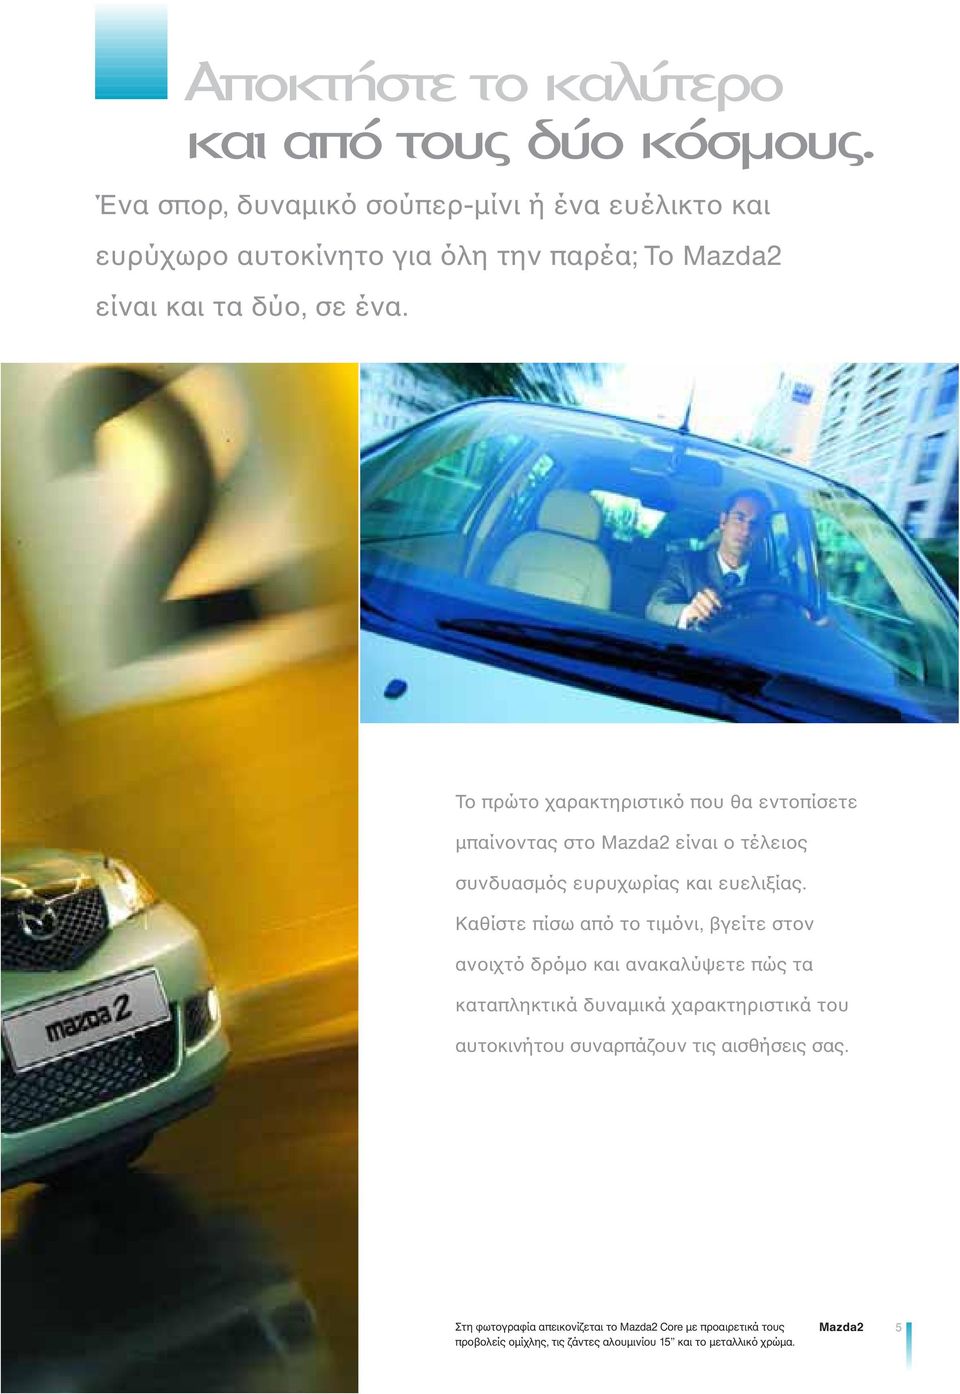 Το πρώτο χαρακτηριστικό που θα εντοπίσετε μπαίνοντας στο Mazda2 είναι ο τέλειος συνδυασμός ευρυχωρίας και ευελιξίας.